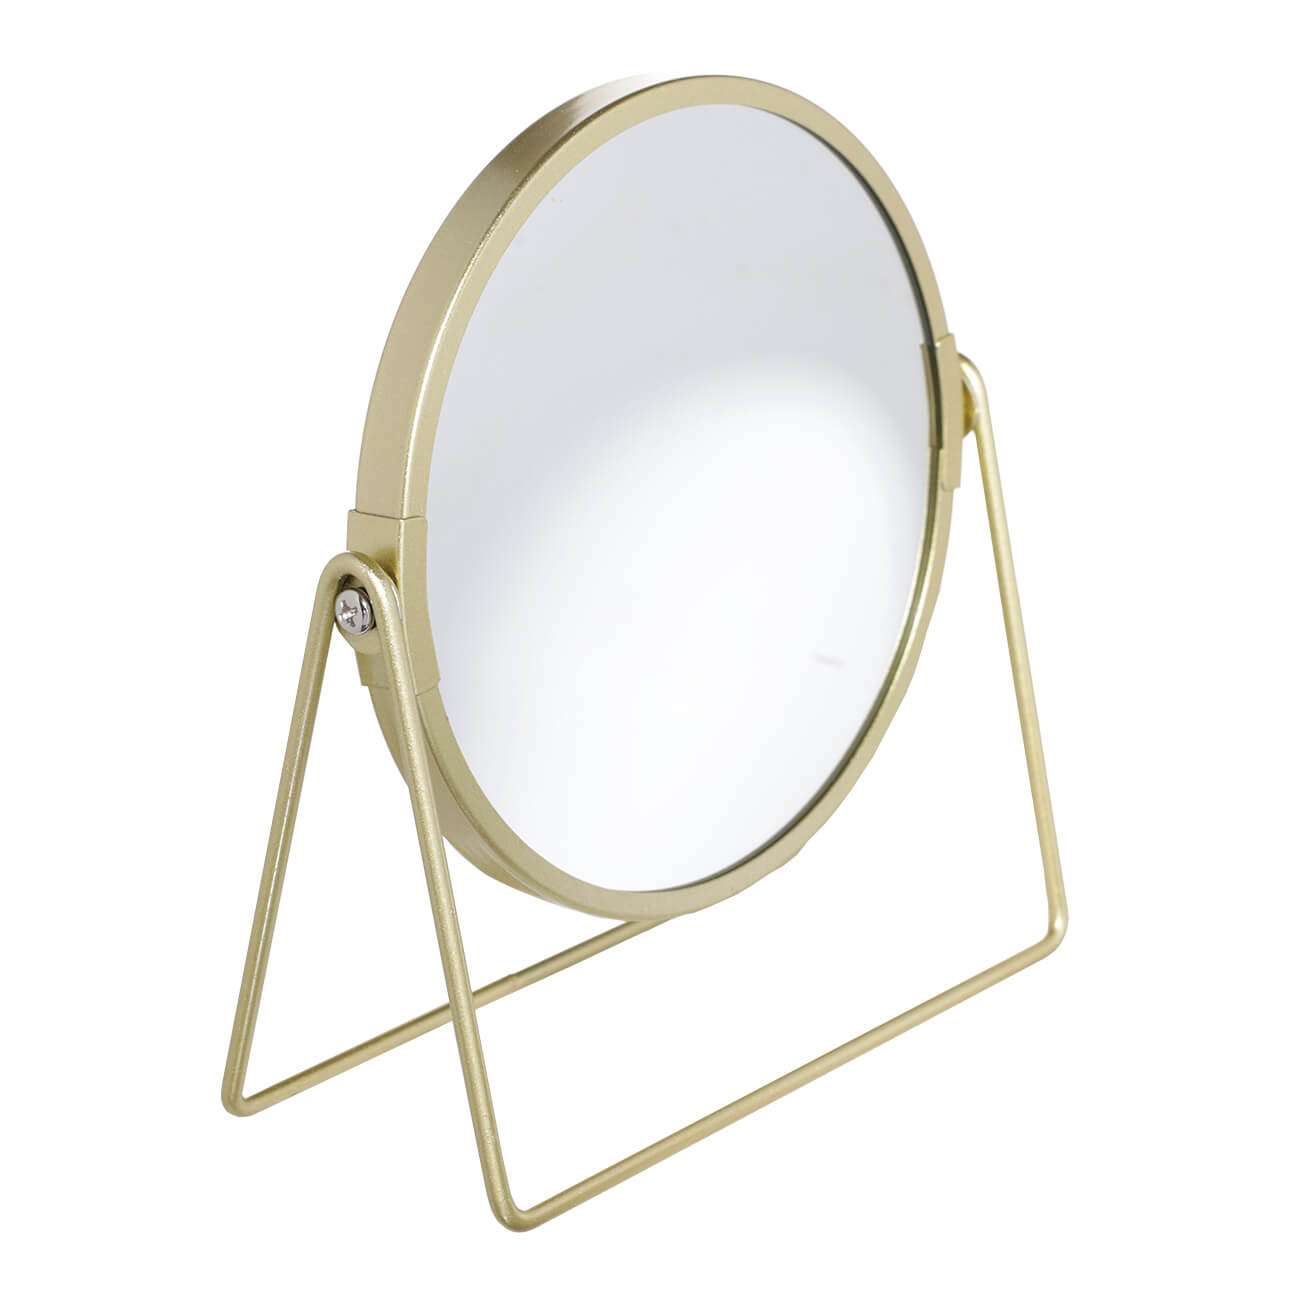 Зеркало настольное, 18 см, двустороннее, металл, круглое, золотистое, Freya зеркало настольное 18 см двустороннее металл круглое золотистое trend